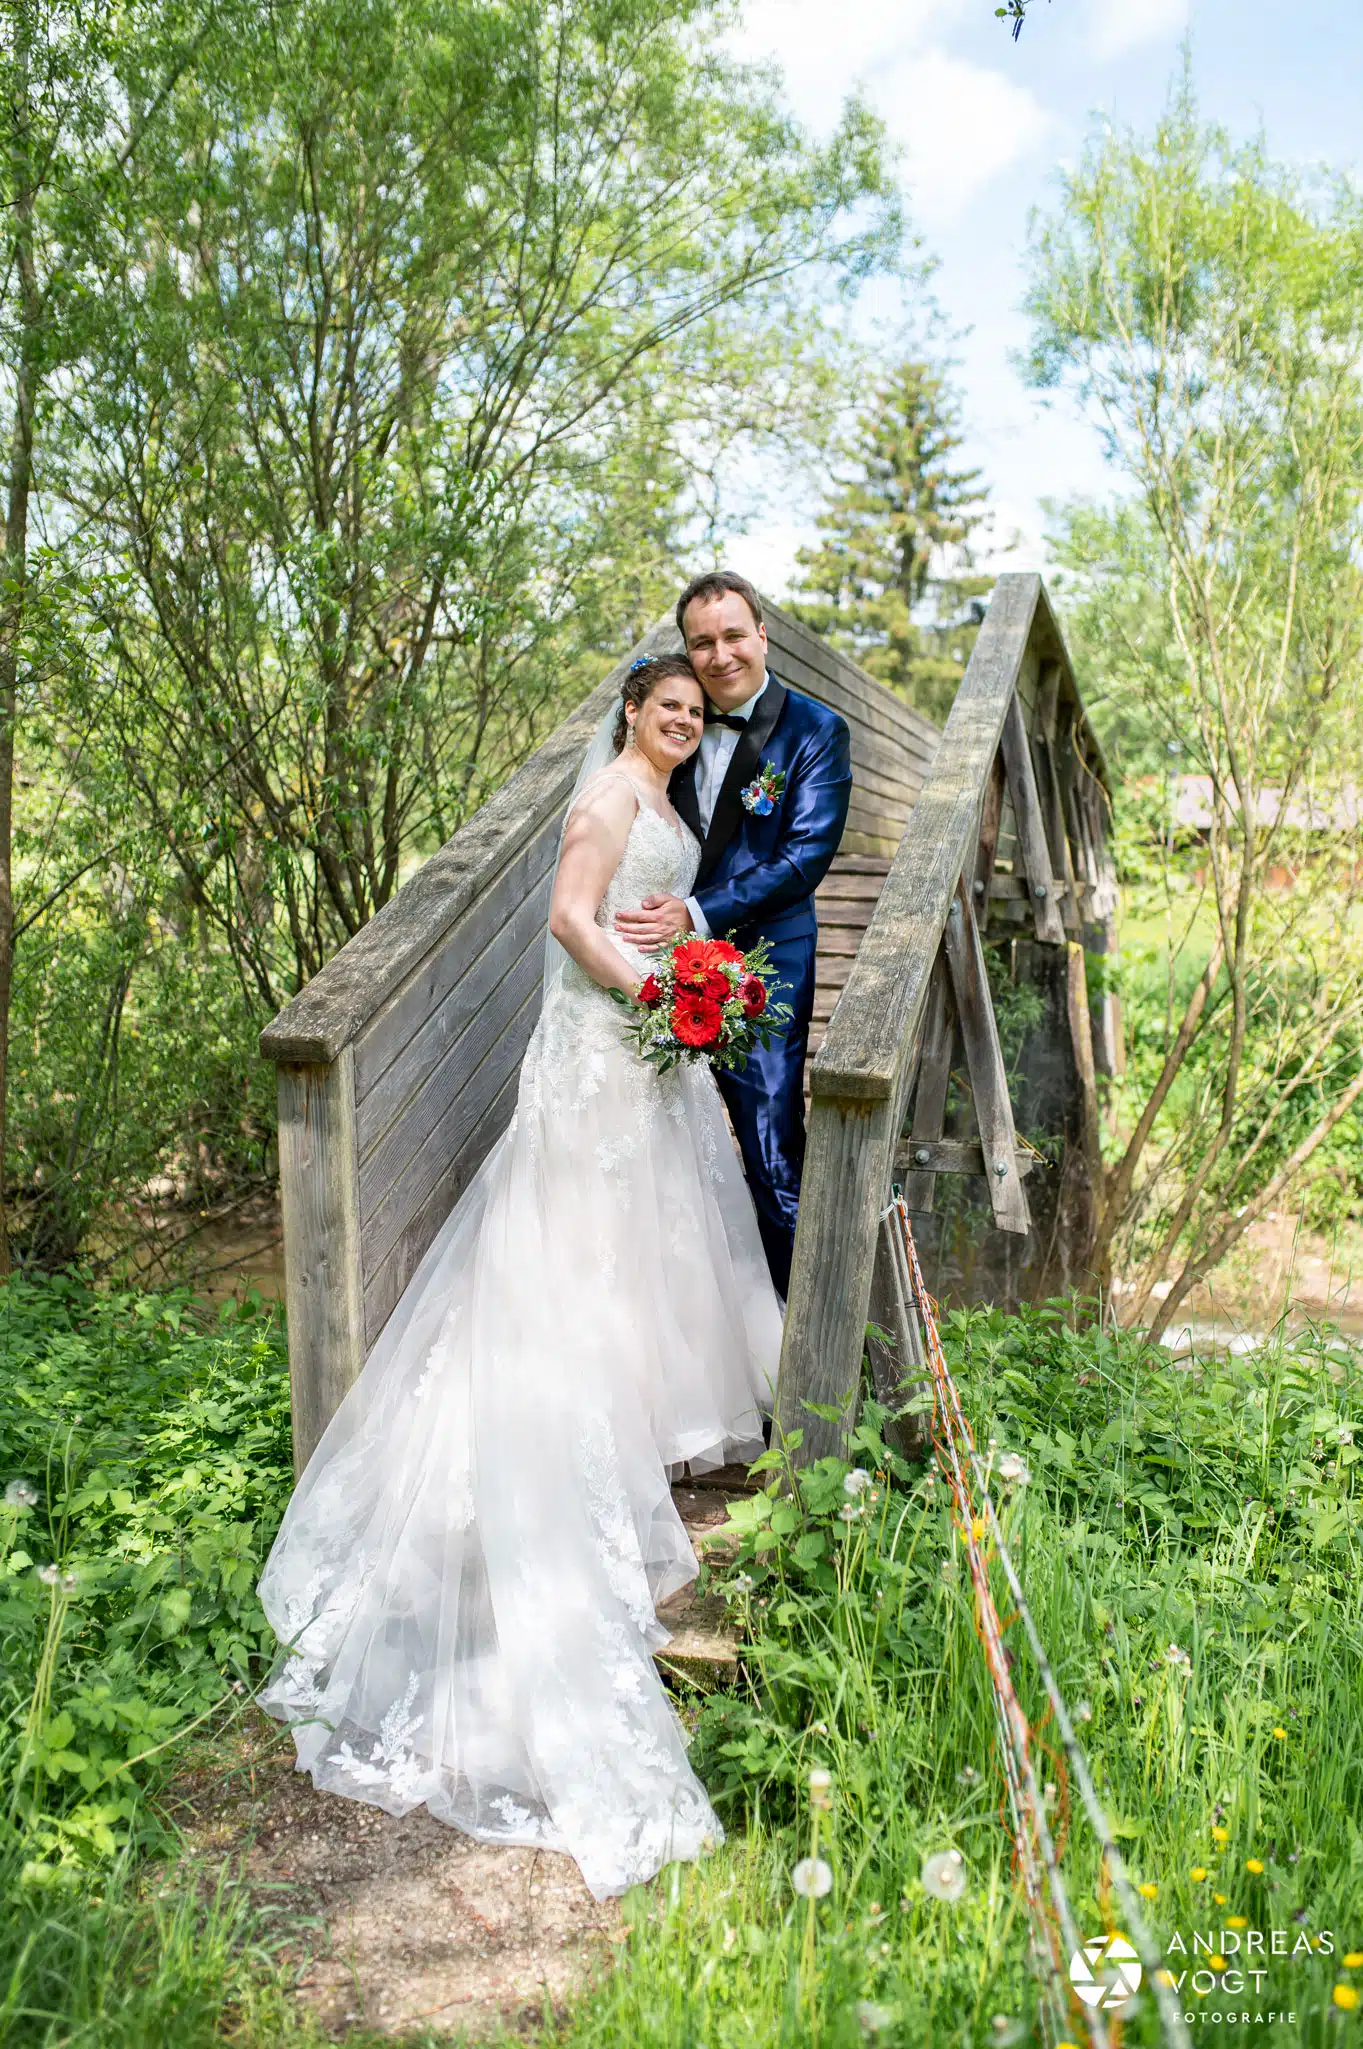 Marie und Gregor - Brautpaarfotos an einer Holzbrücke - Fotograf Andreas Vogt